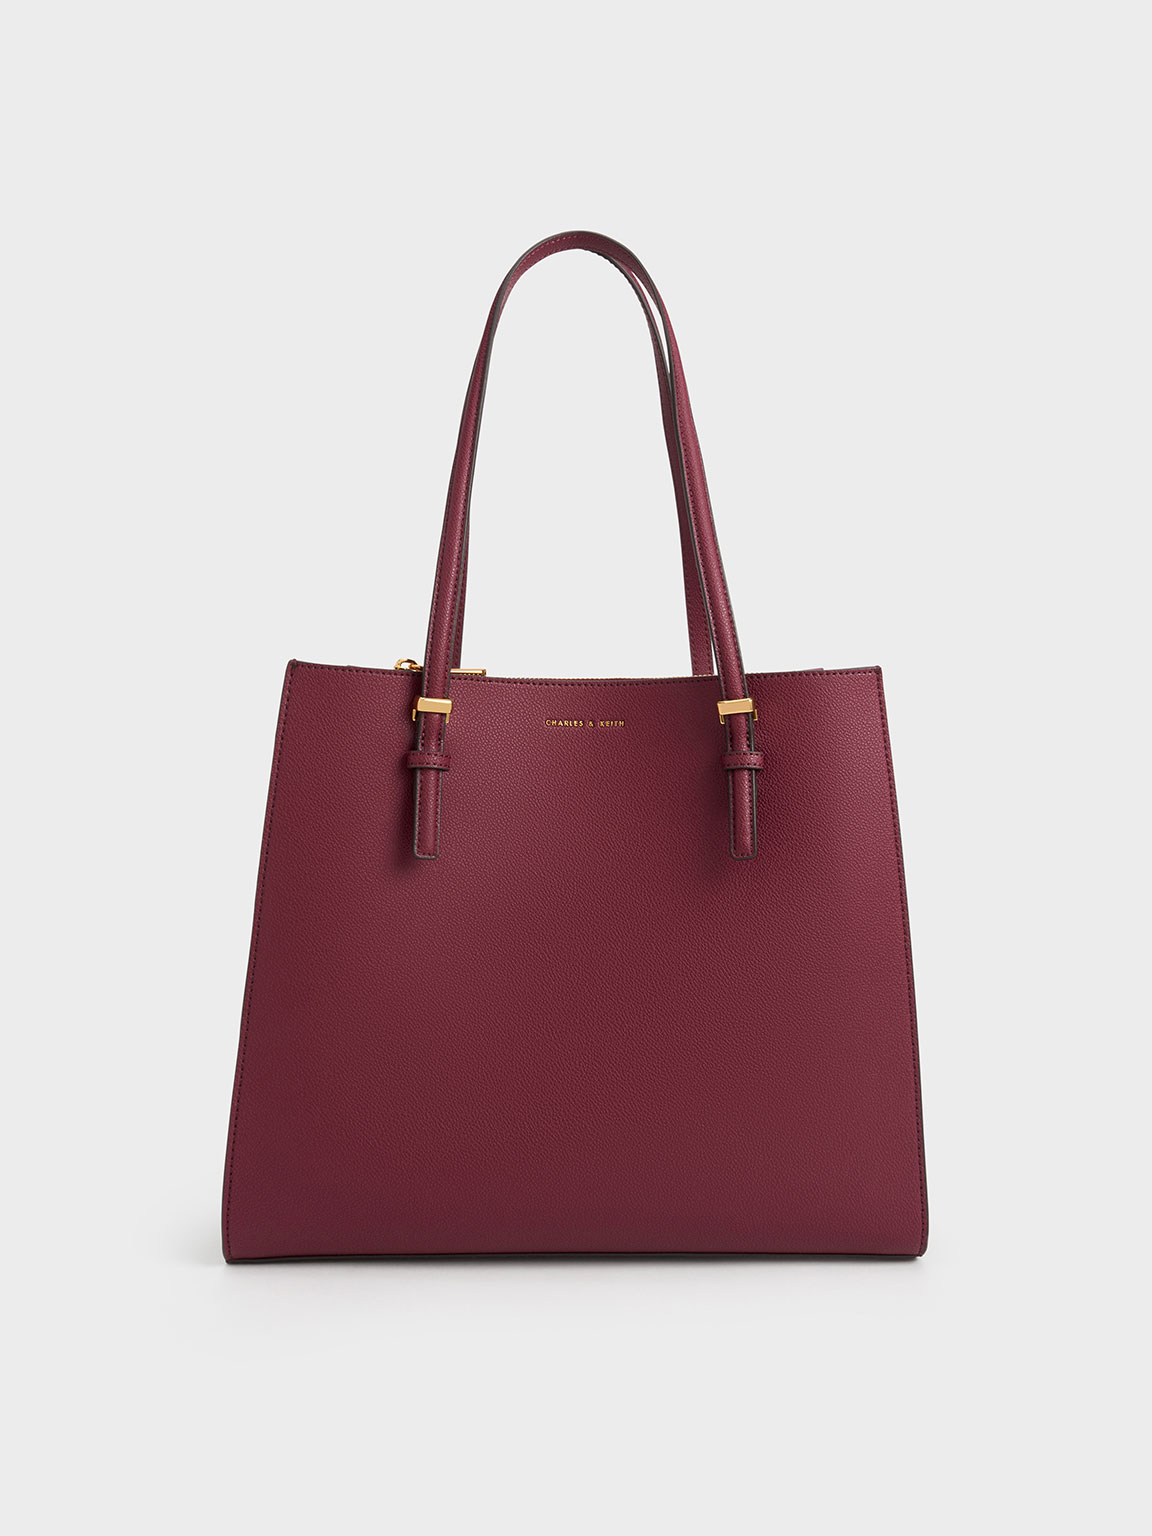 charles and keith brand new handbag with tags India | Ubuy